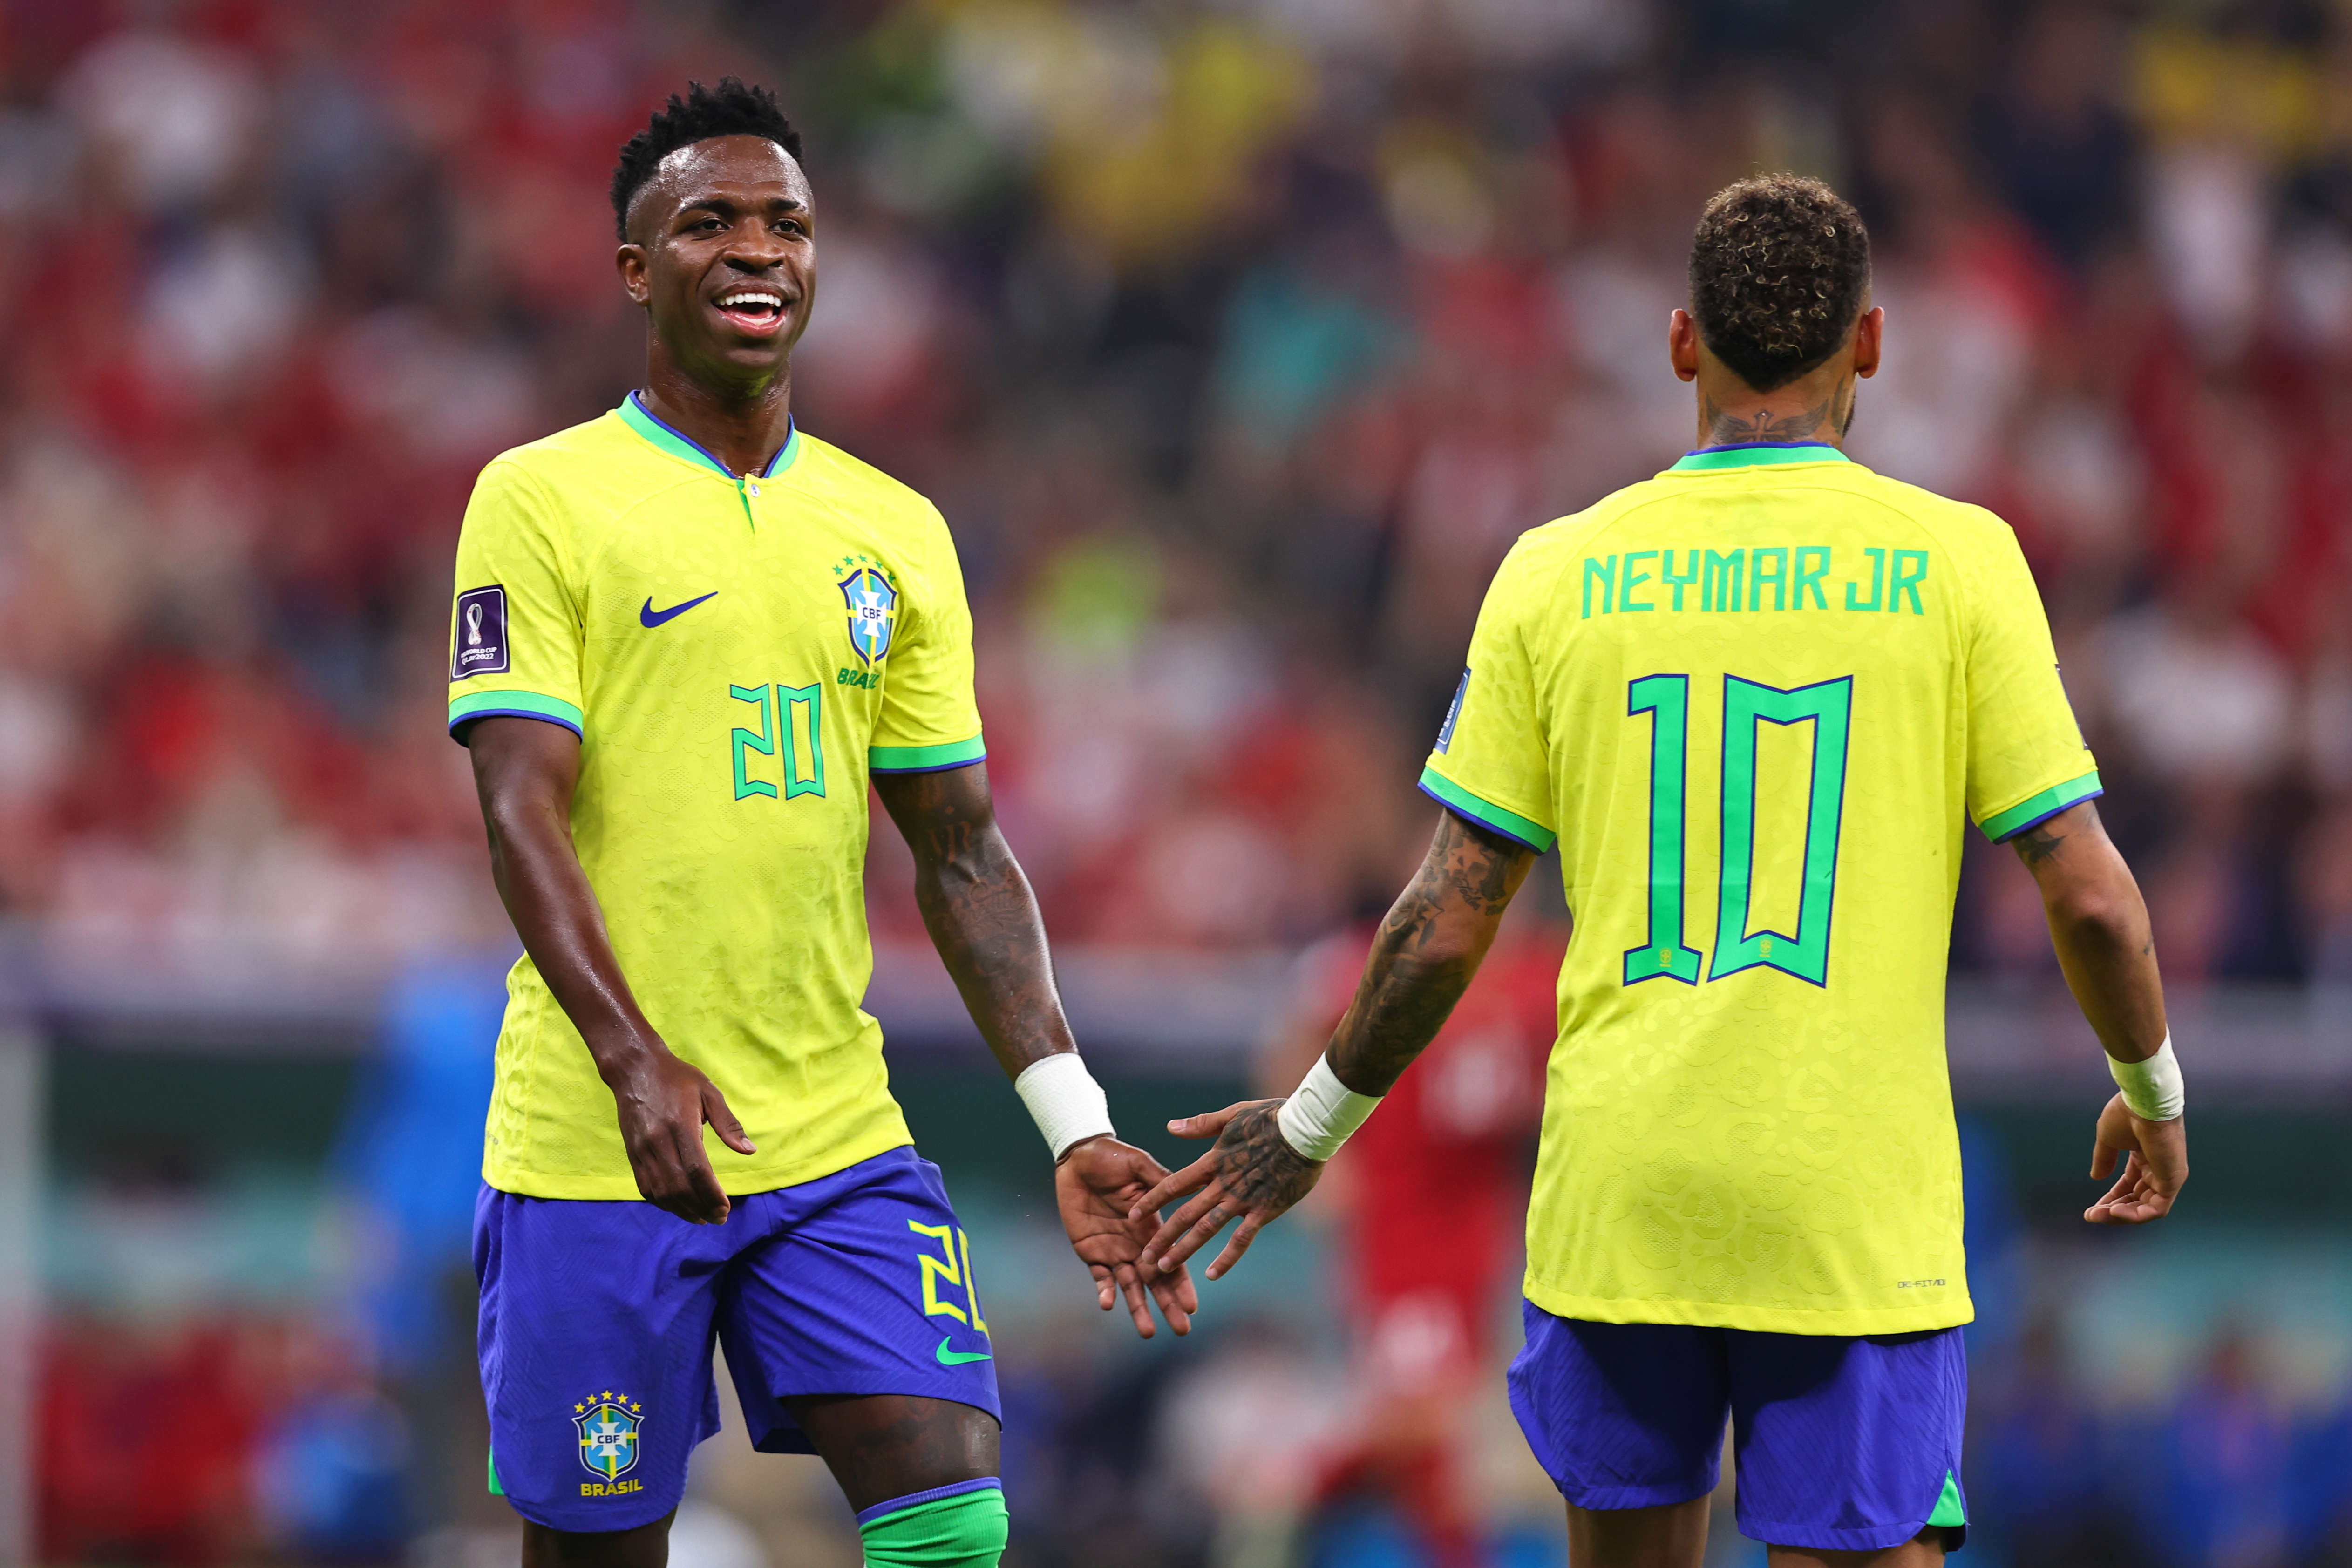 Vini Jr. devendo na seleção brasileira? Veja a comparação com Neymar aos 23 anos